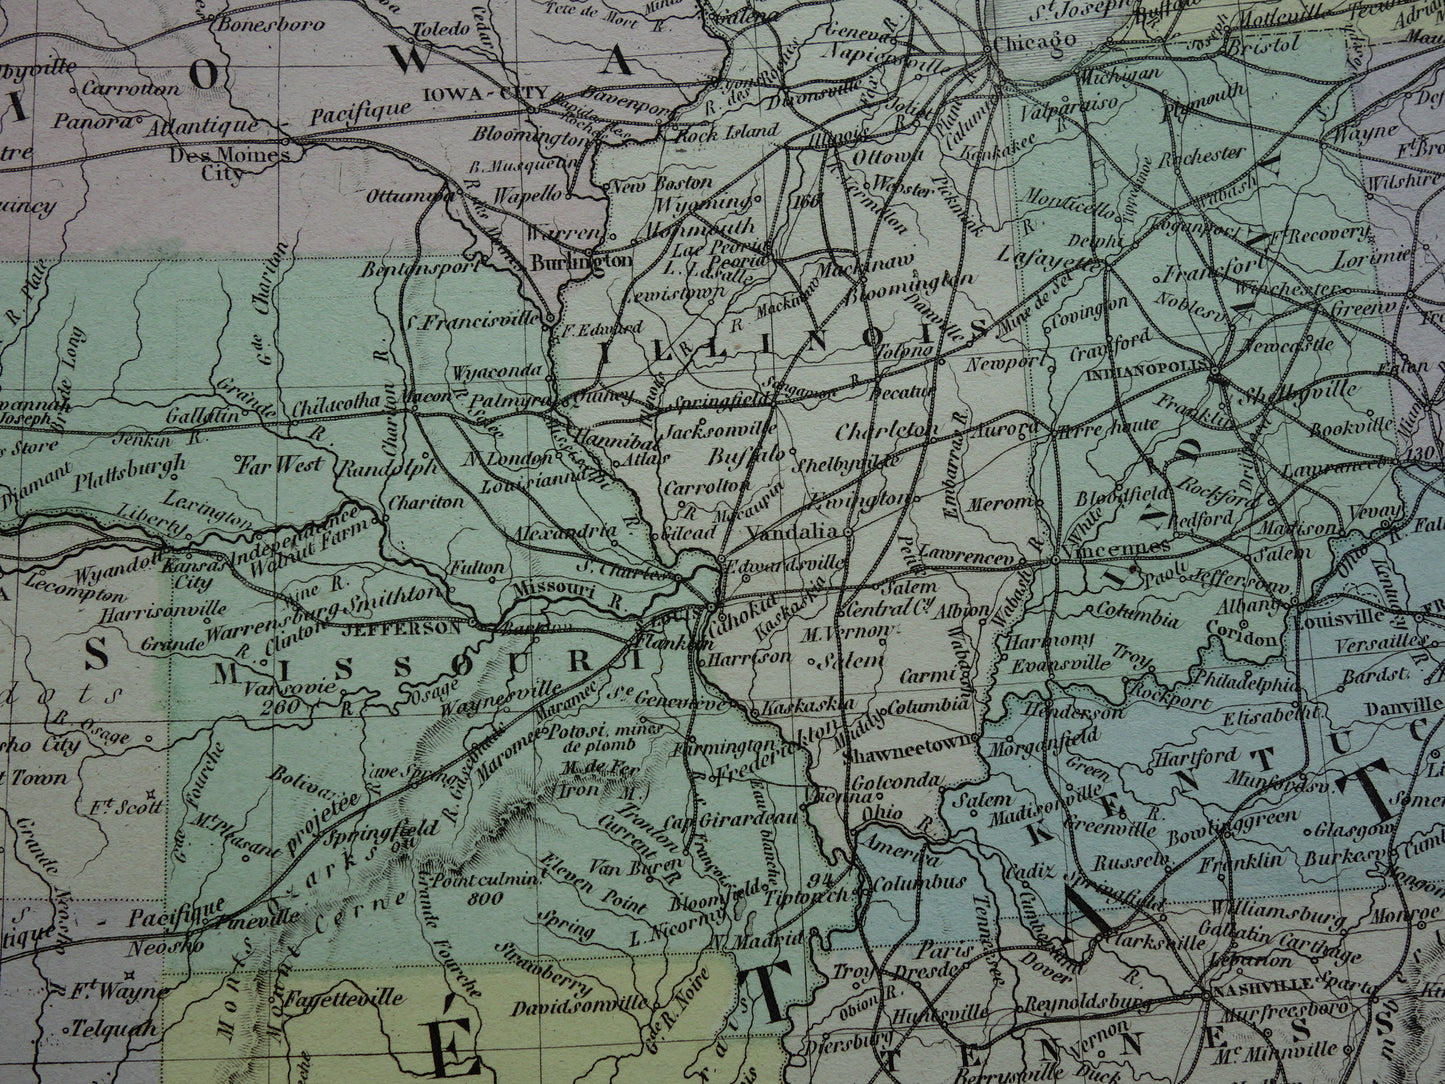 VERENIGDE STATEN antieke kaart van de VS 145+ jaar oude landkaart van Oostkust Amerika USA originele vintage historische kaarten